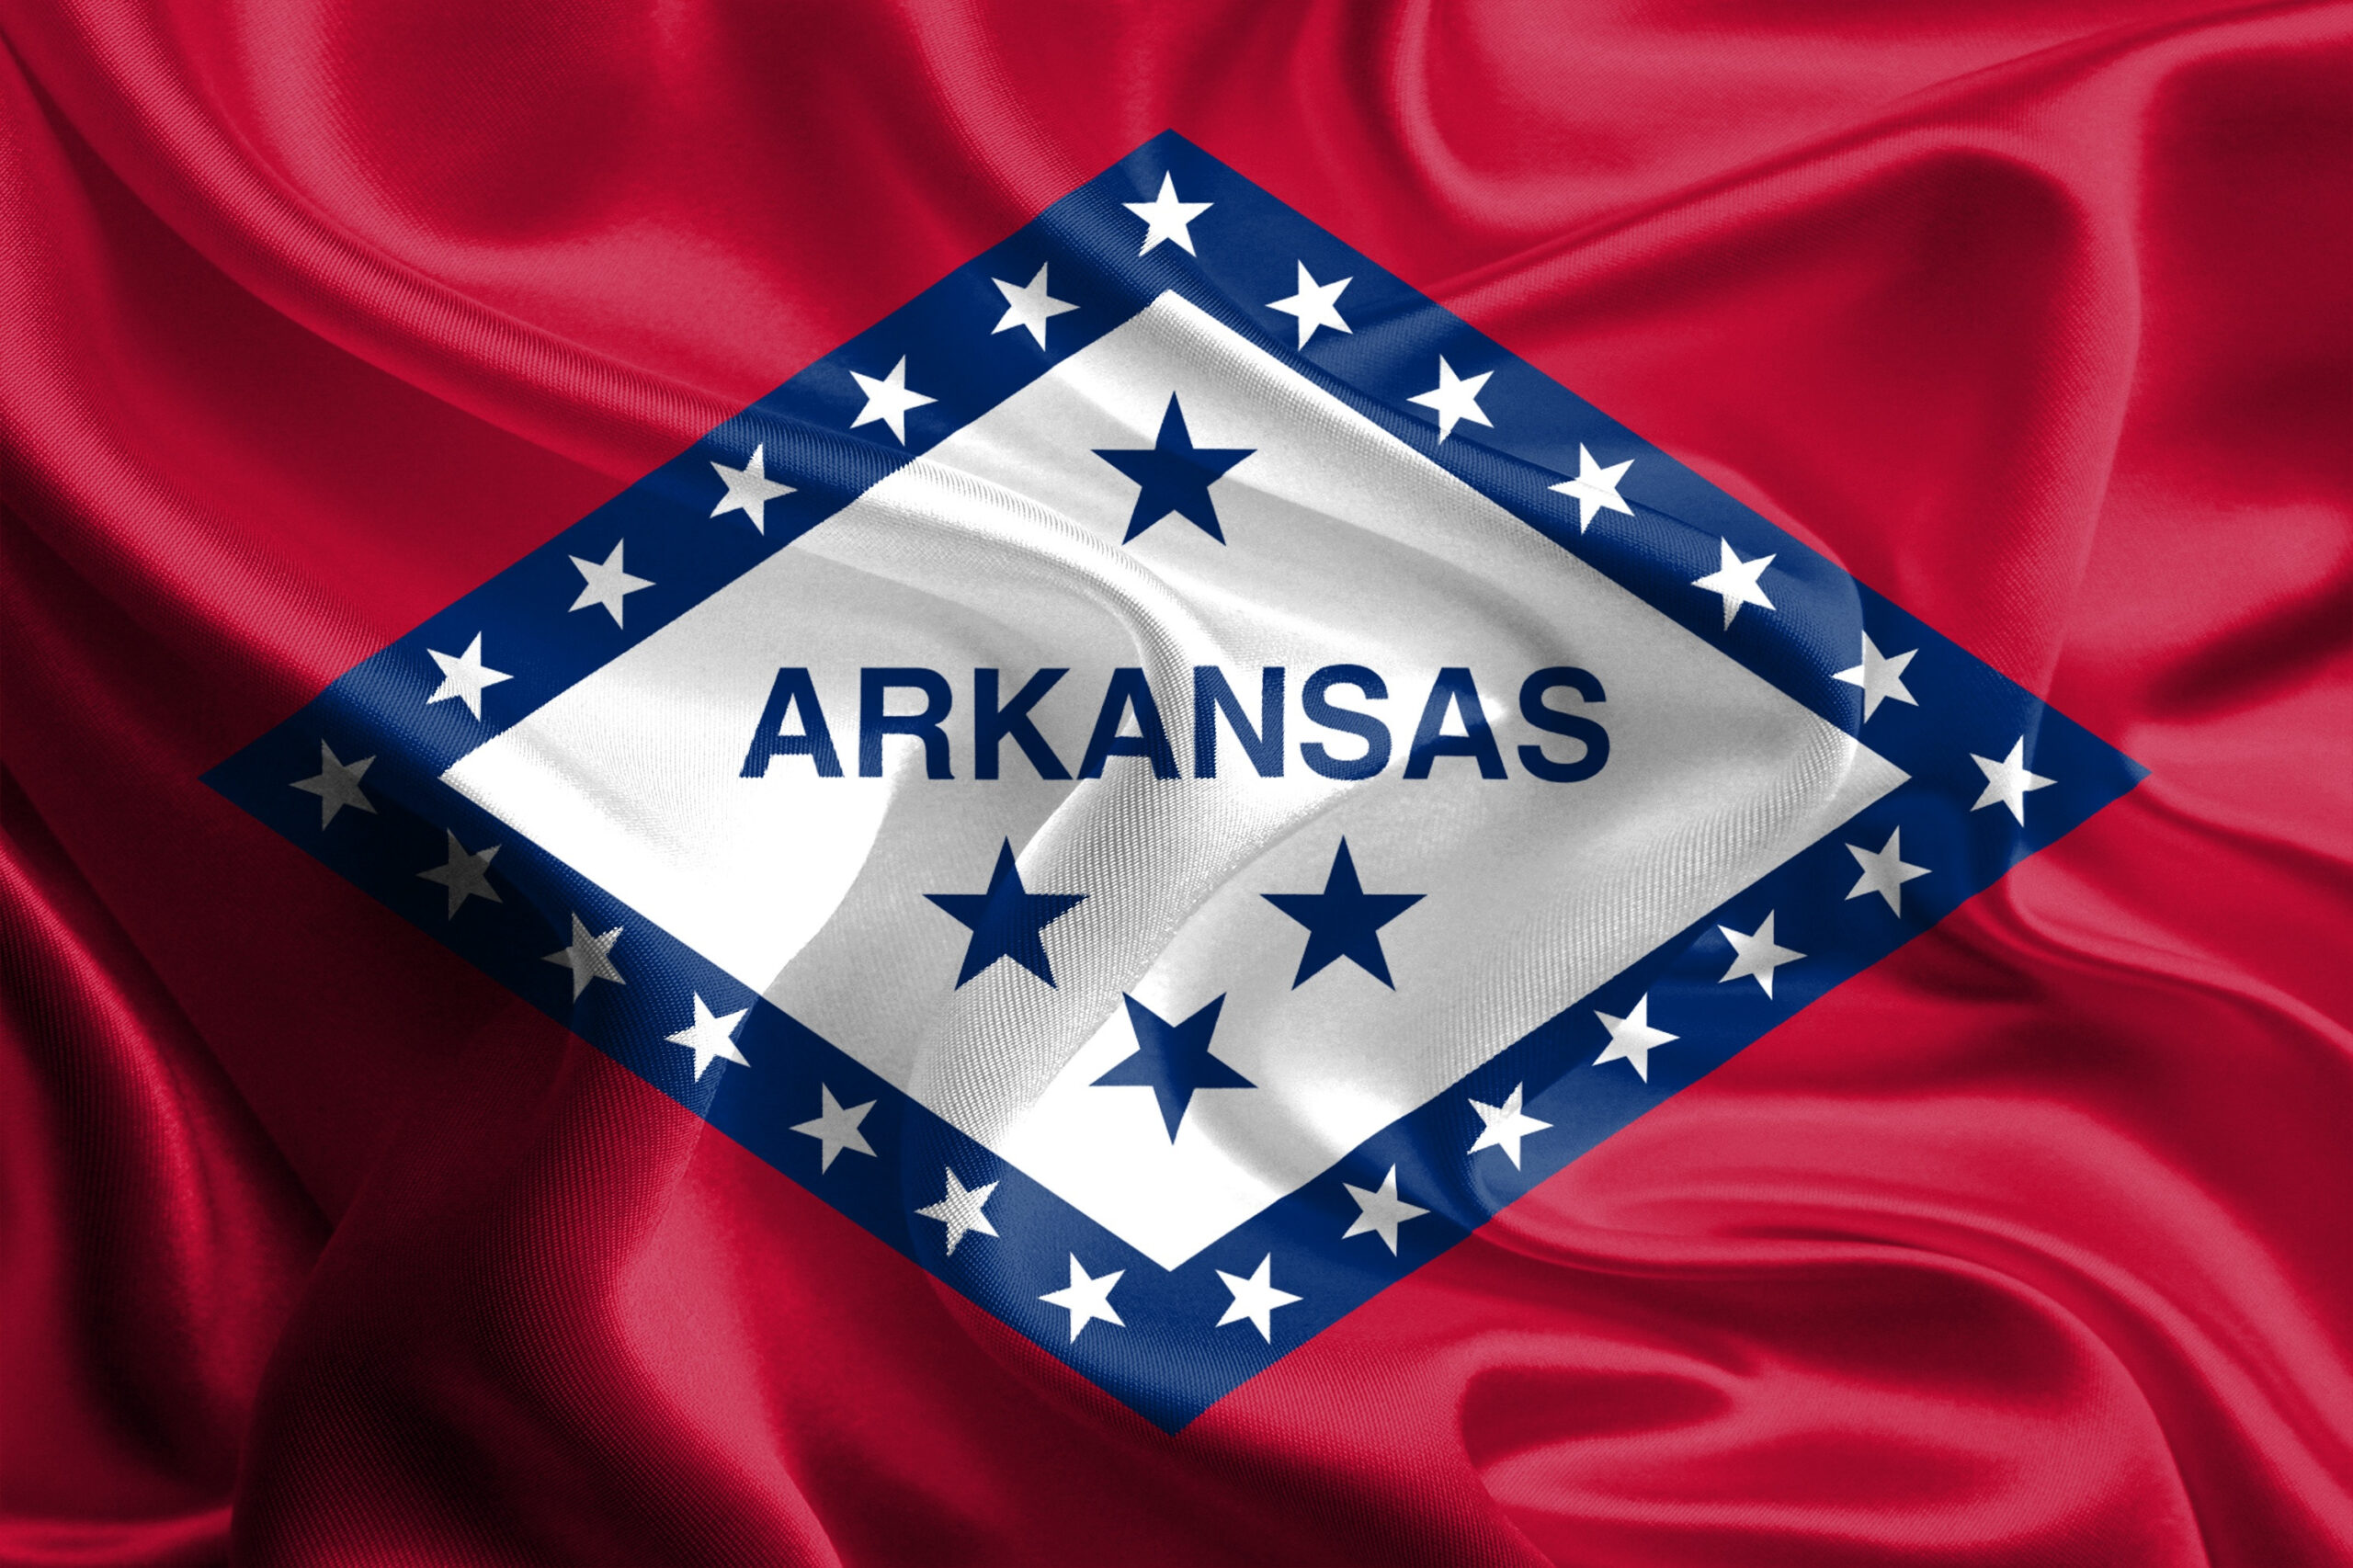 2. Arkansas